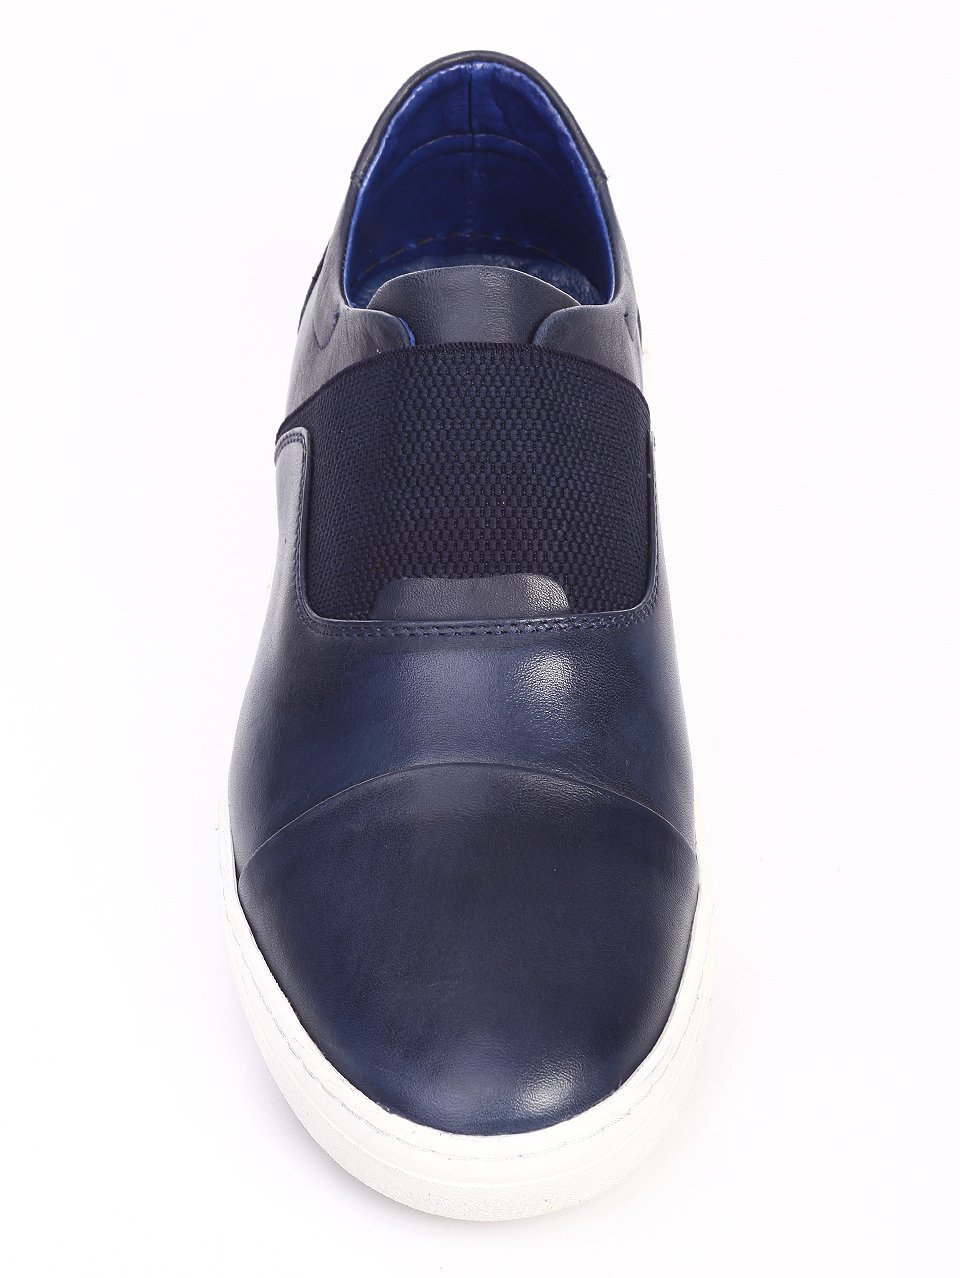 Спортно-елегантни мъжки обувки от естествена кожа 7AT-17589 blue